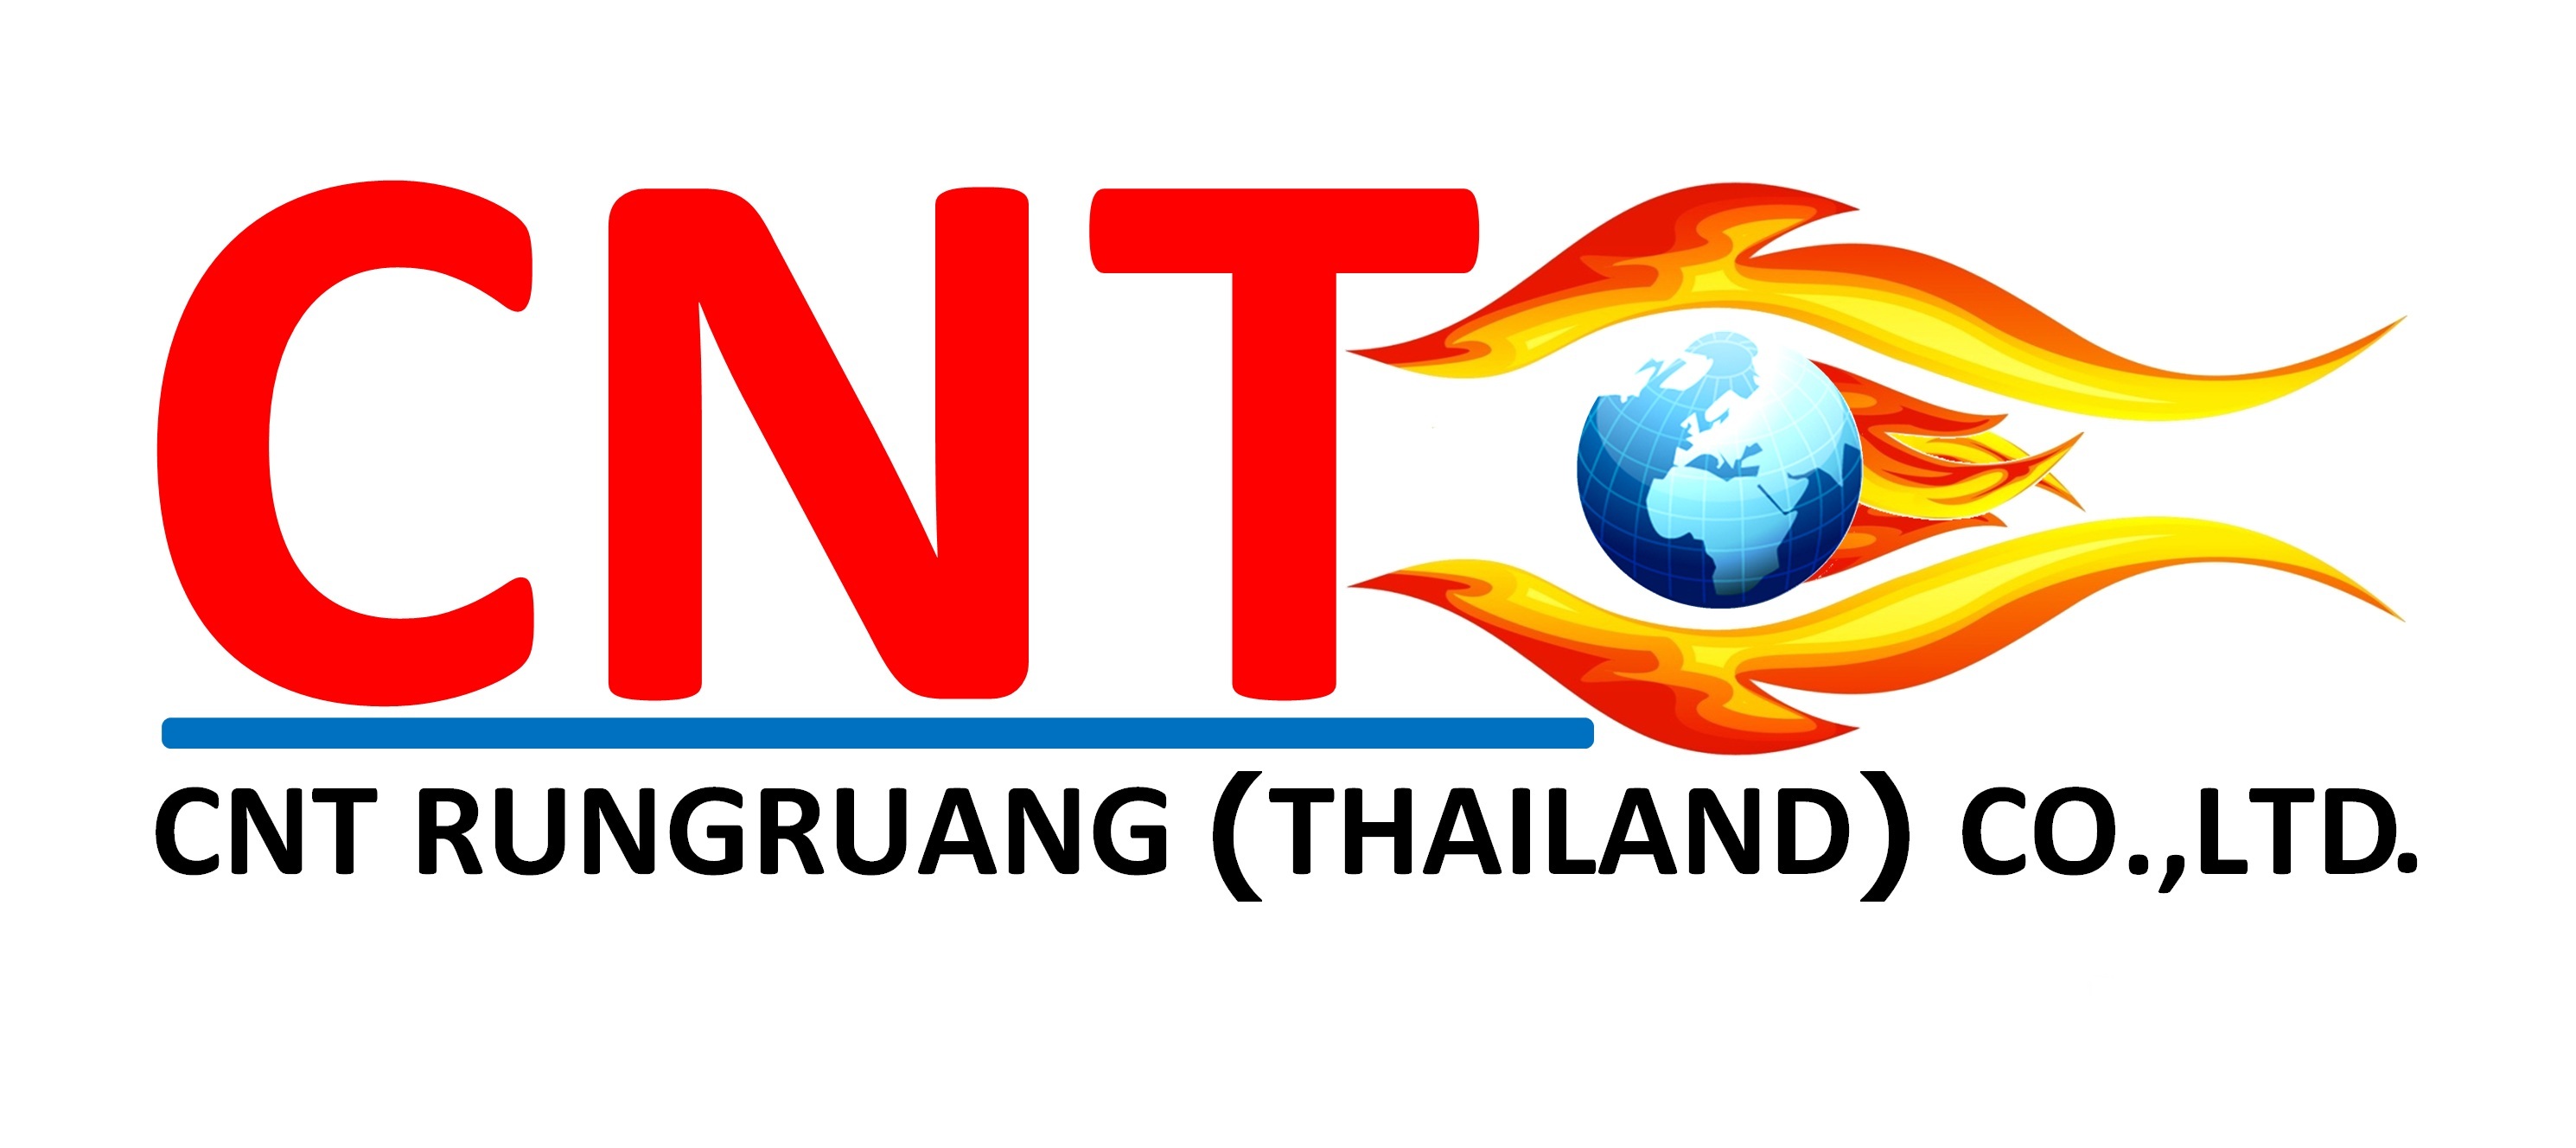 CNT RUNGRUANG (THAILAND) CO.,LTD., บริษัท ซีเอ็นที รุ่งเรือง (ประเทศไทย) จำกัด